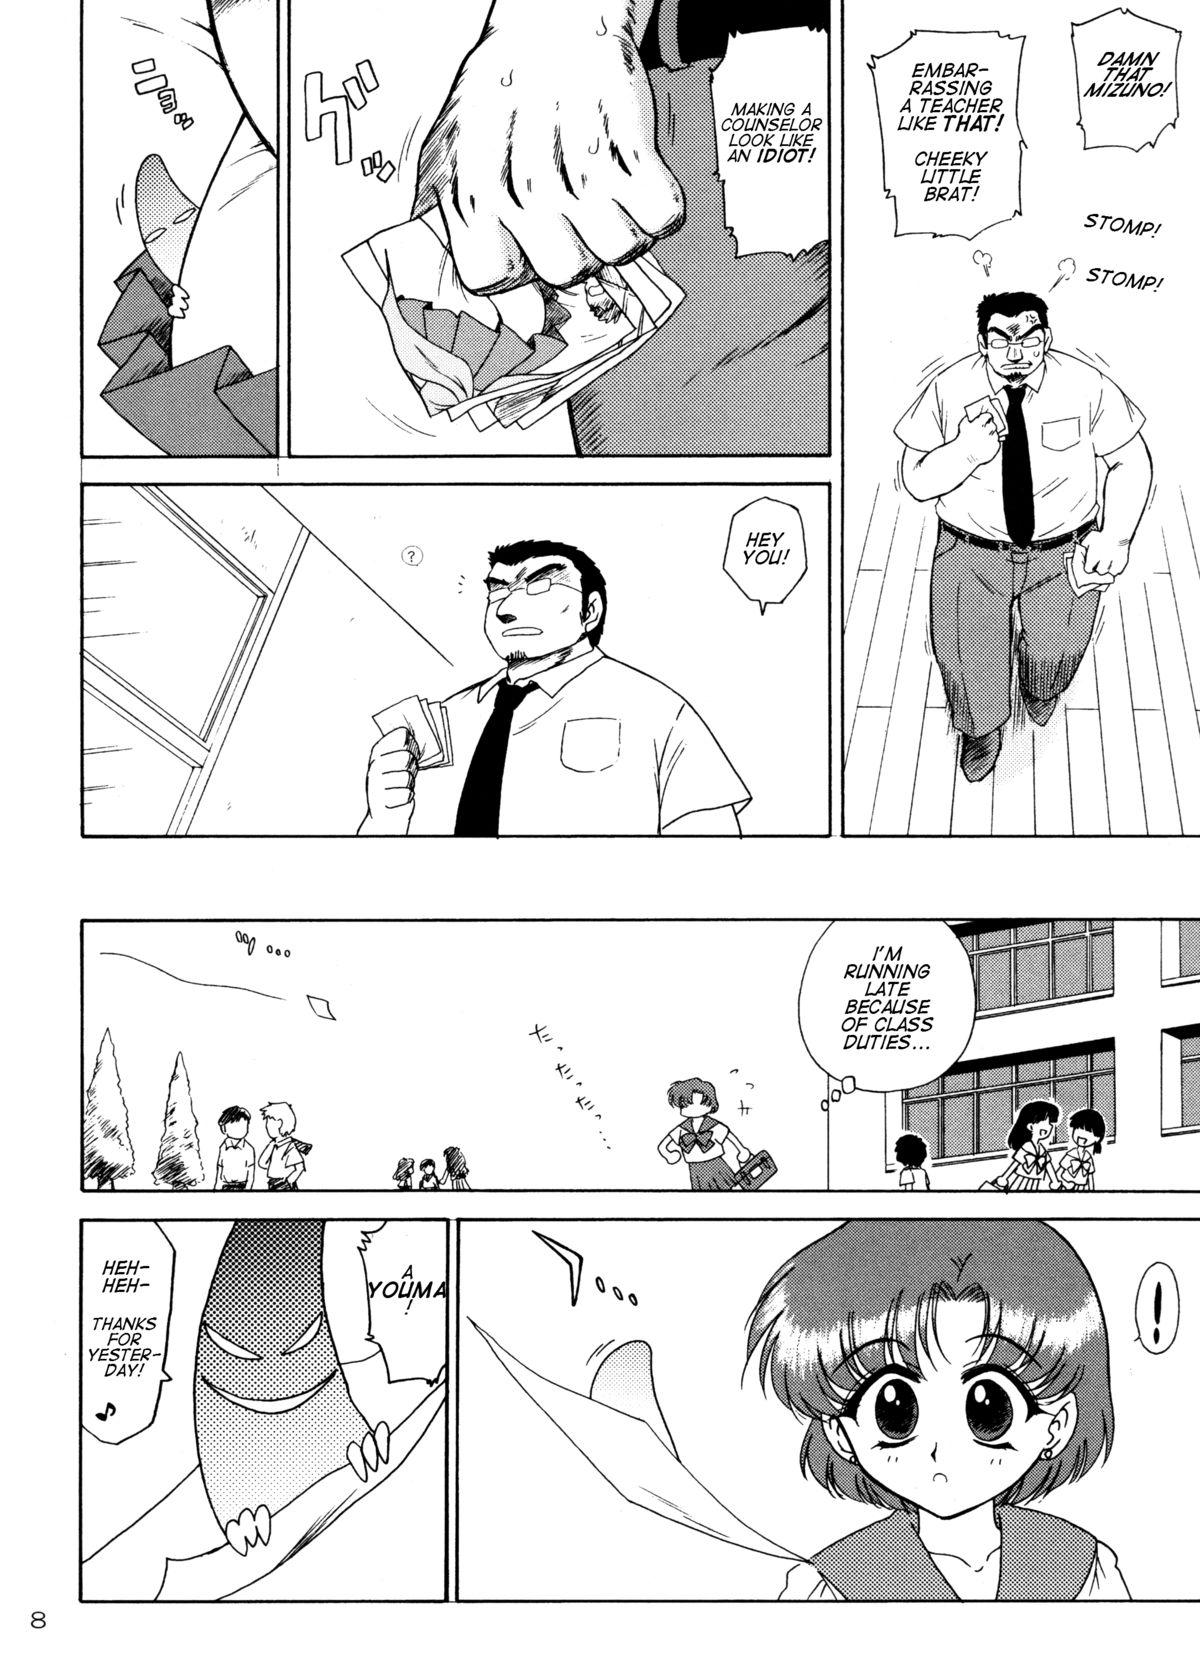 Scene SKY HIGH - Sailor moon Doggy Style Porn - Page 7